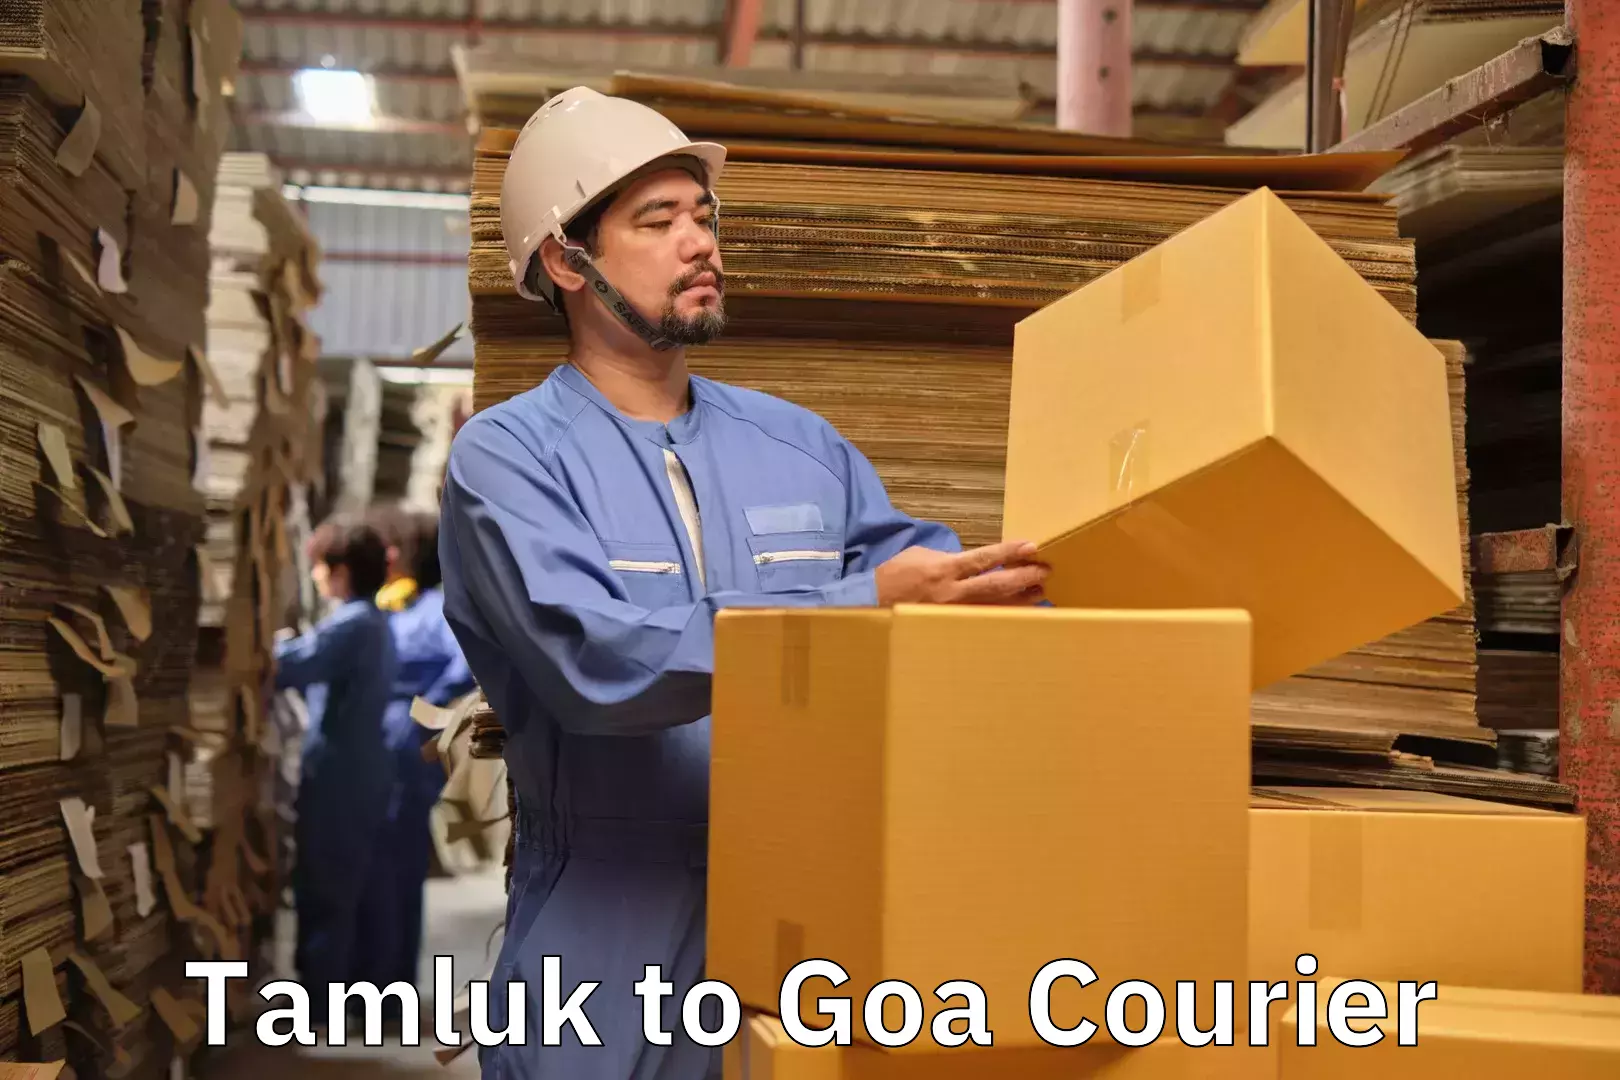 Baggage shipping quotes Tamluk to Goa